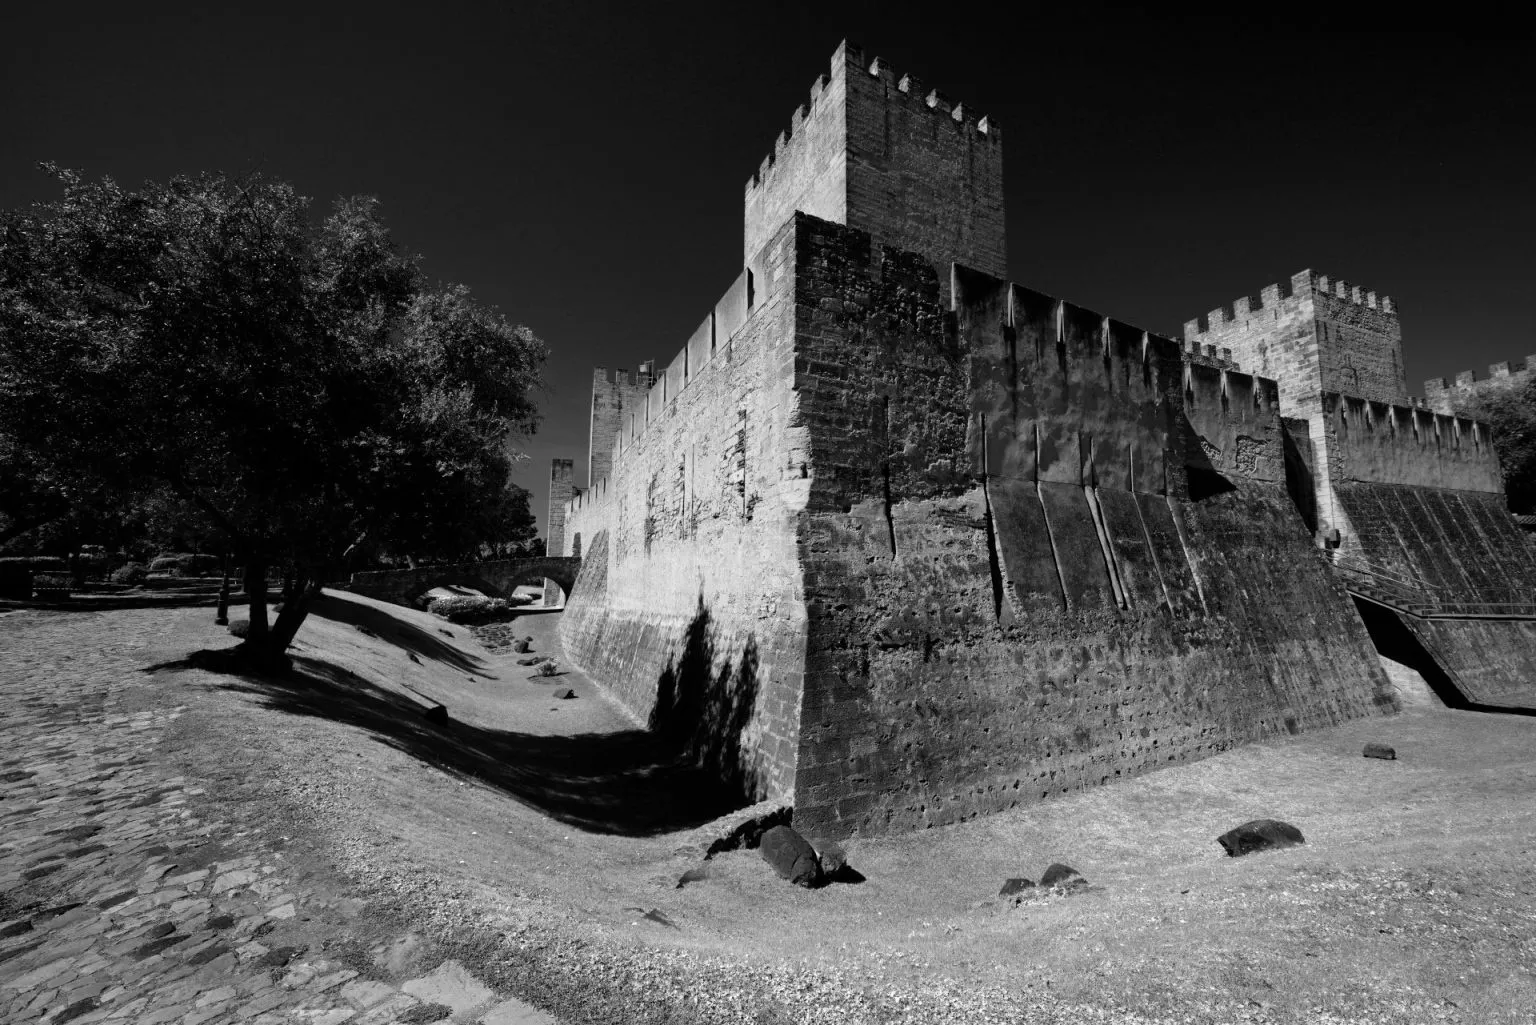 The Castelo de São Jorge